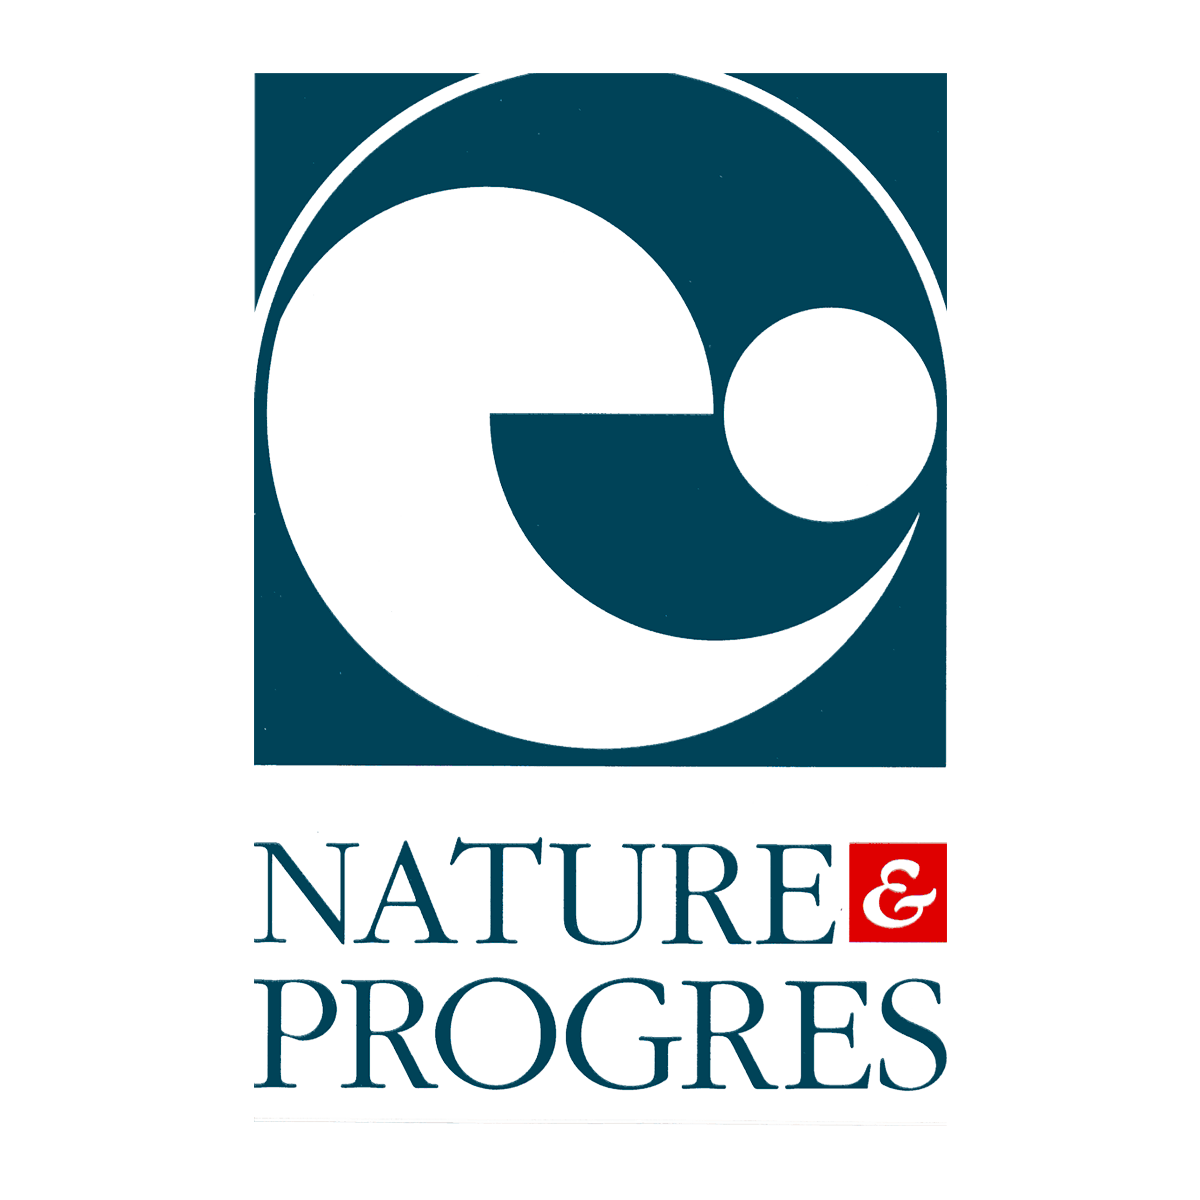 natureetprogres.png